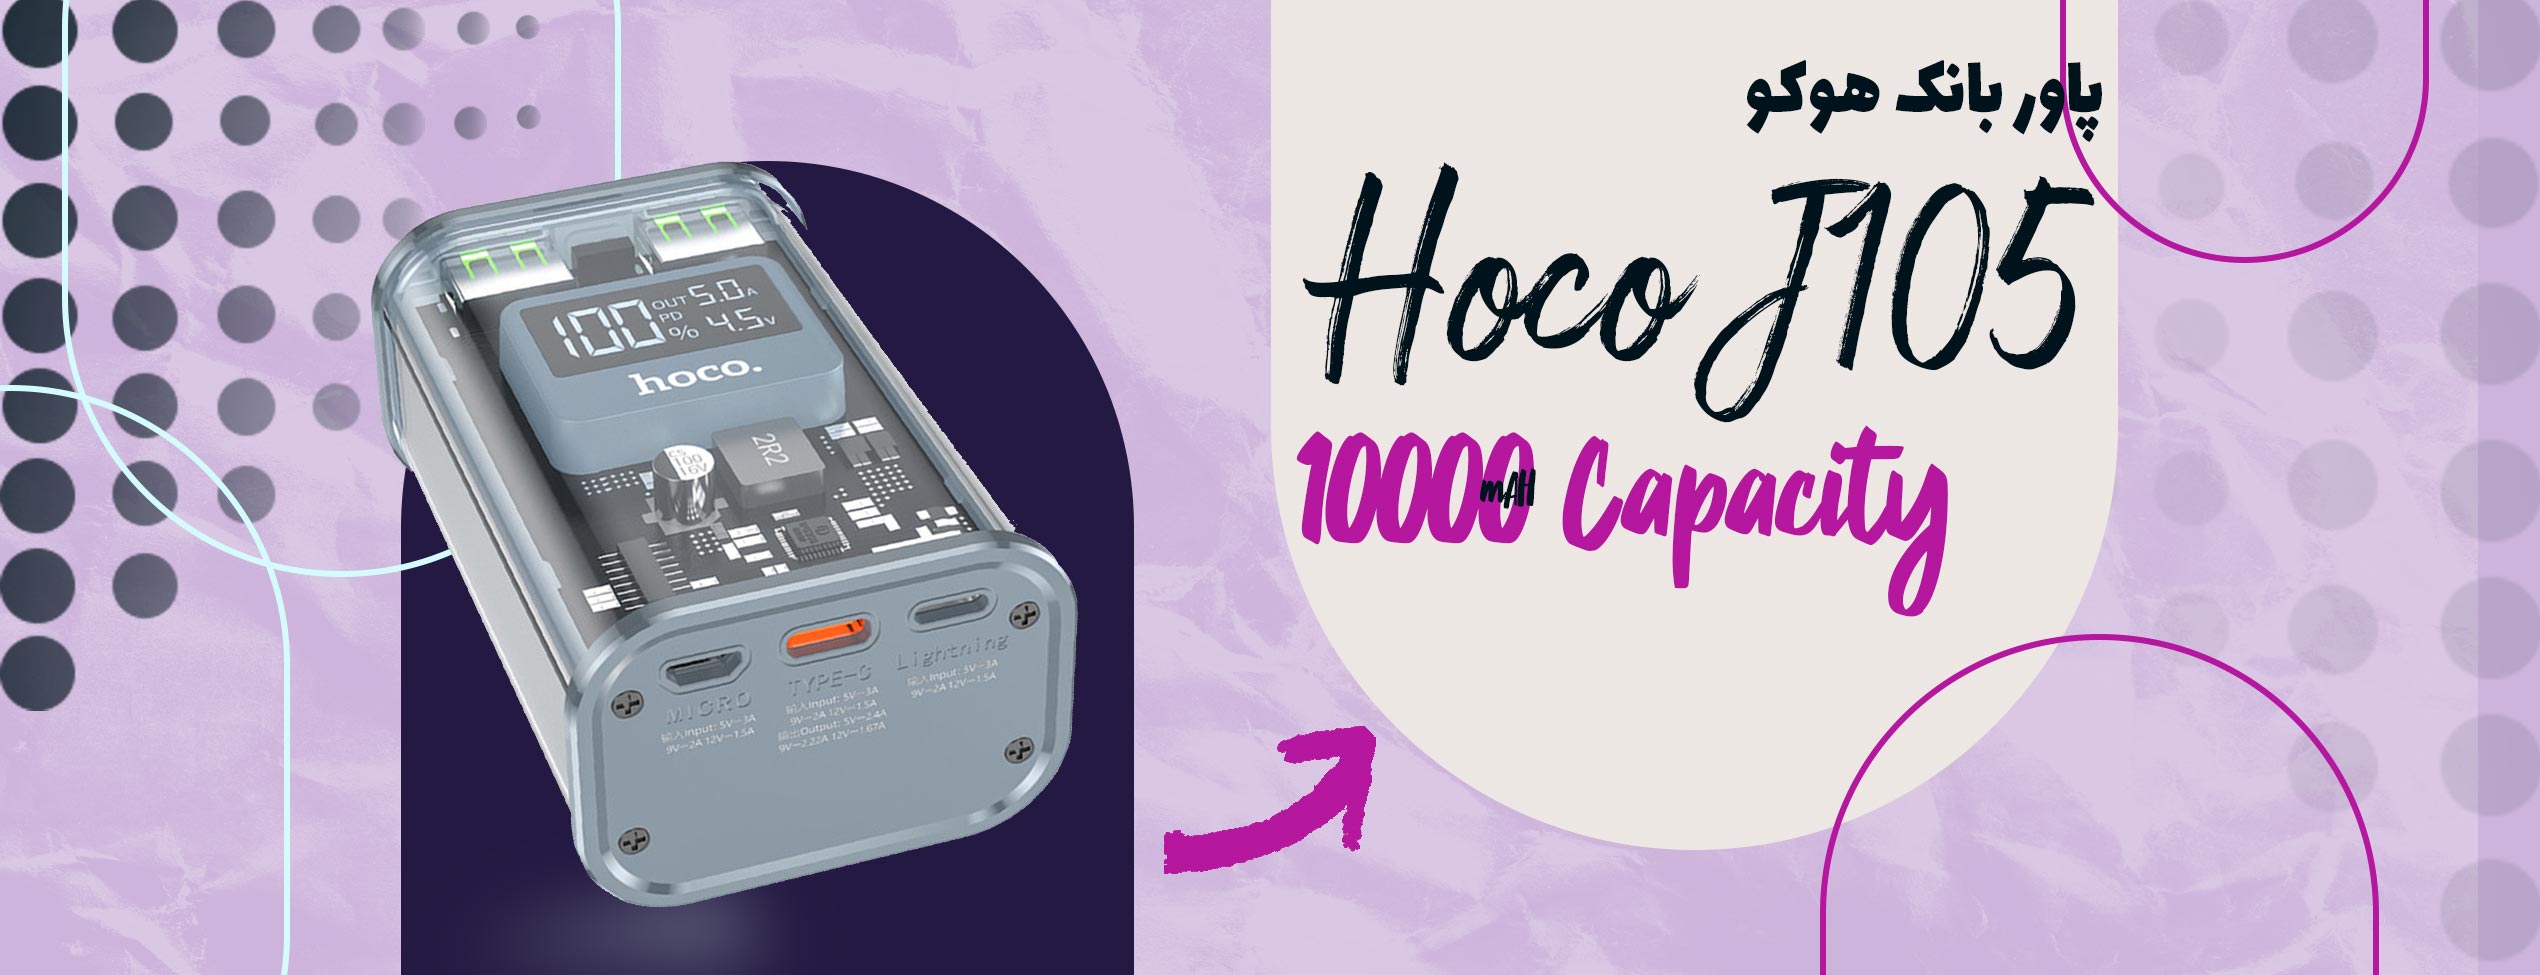 پاور بانک هوکو Hoco J105 ظرفیت 10000 میلی آمپر